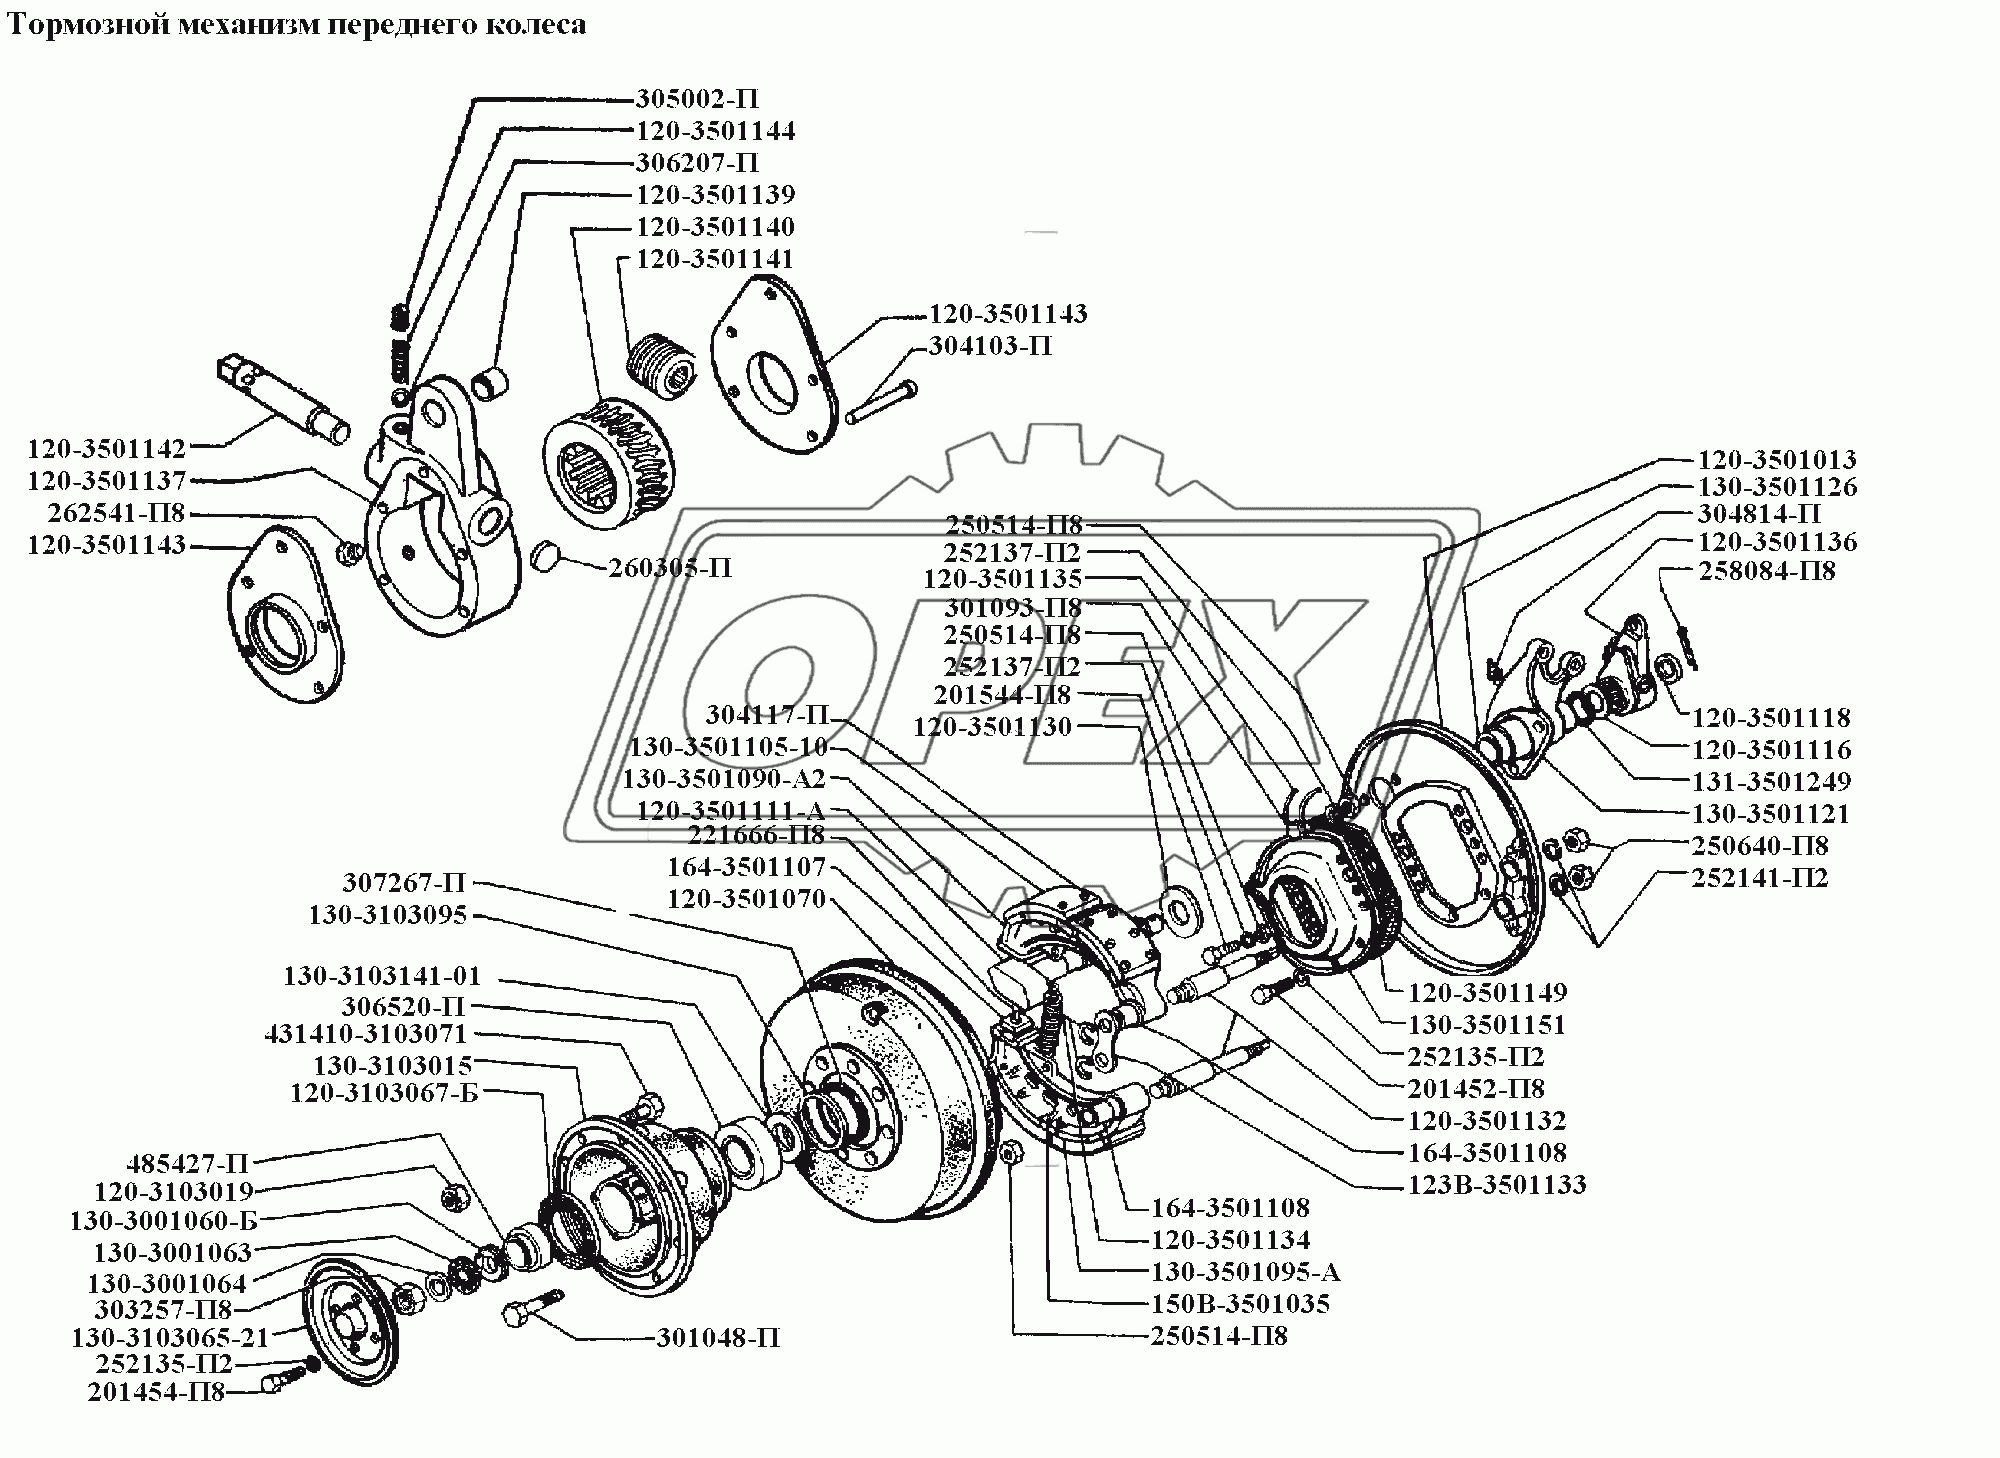 Тормоза\Тормозной механизм переднего колеса